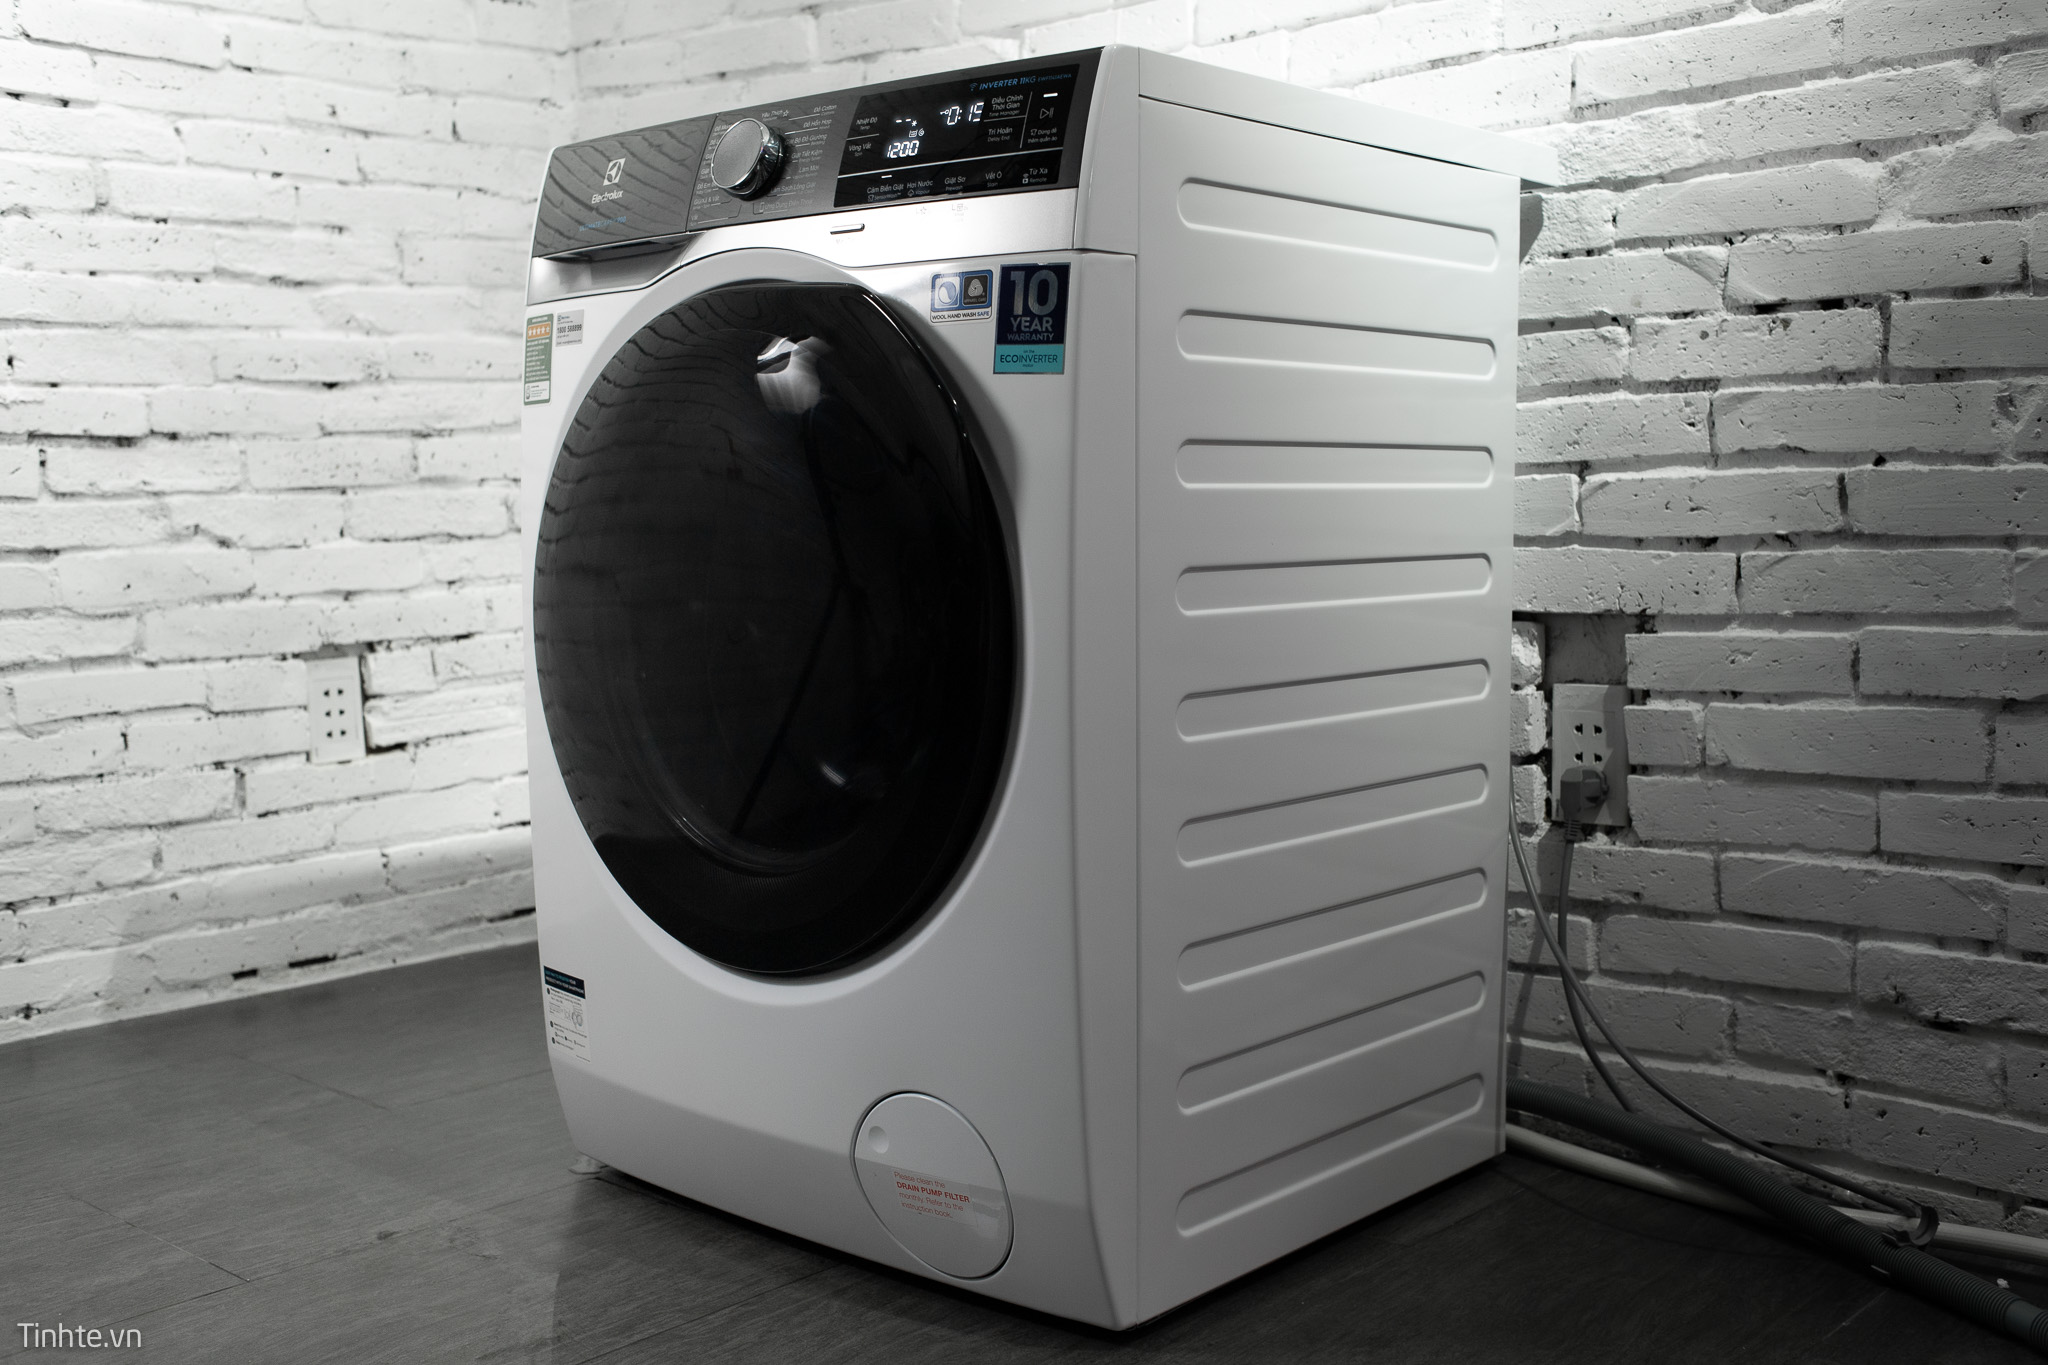 Trên tay máy giặt Electrolux UltimateCare 900